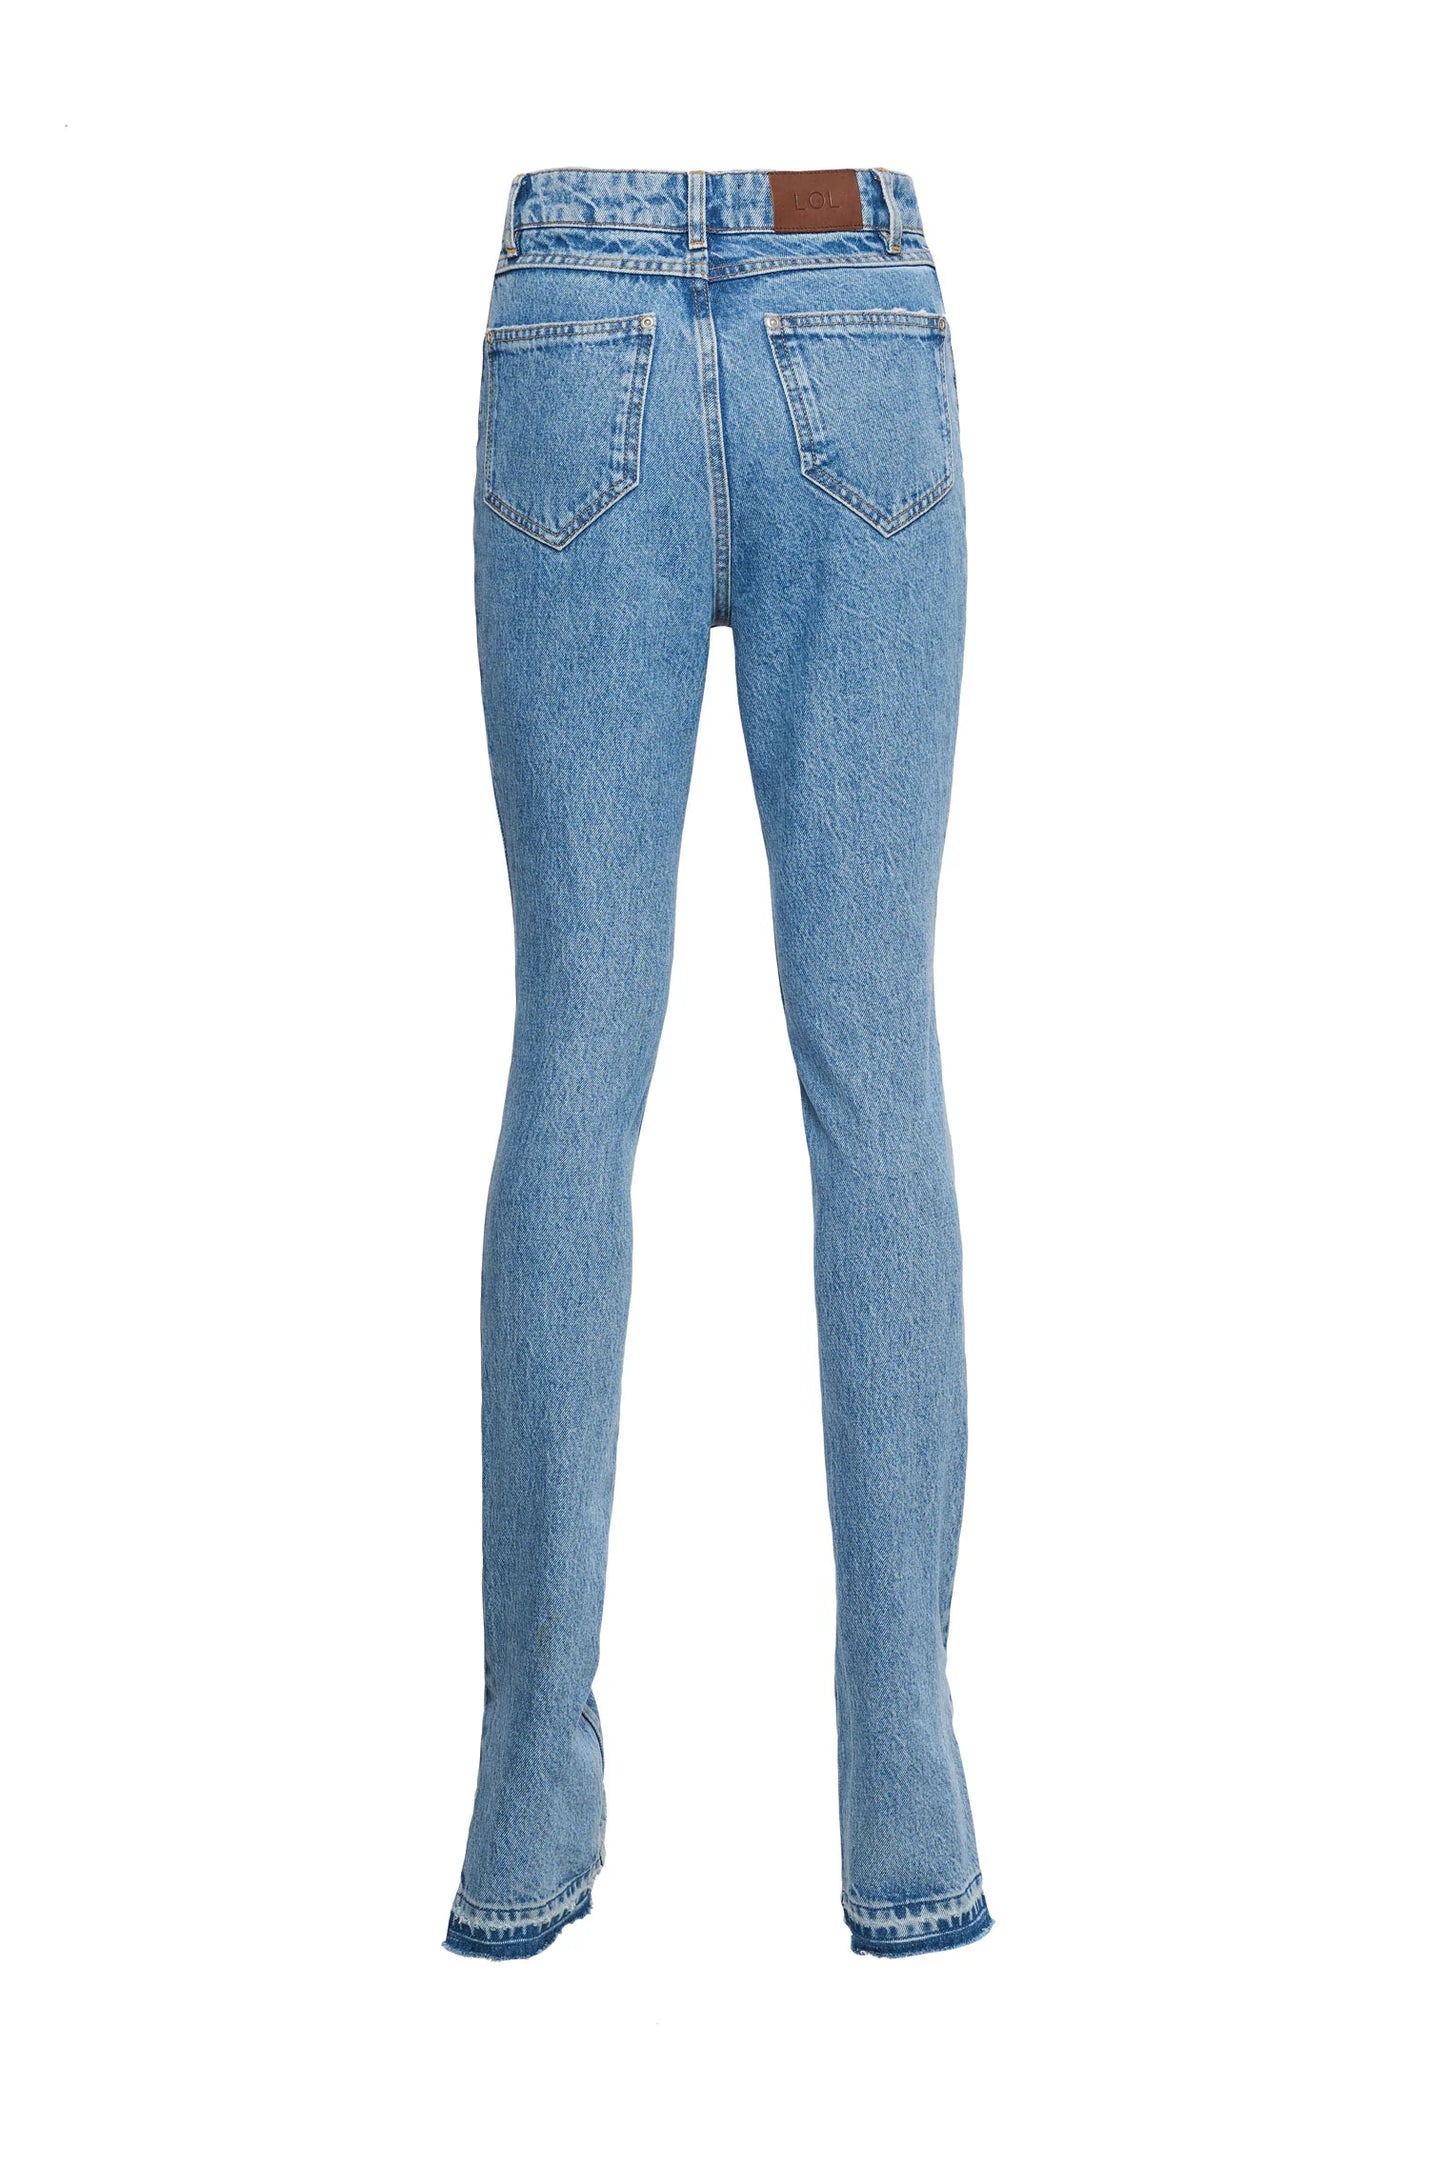 Gisele - Blue Jeans